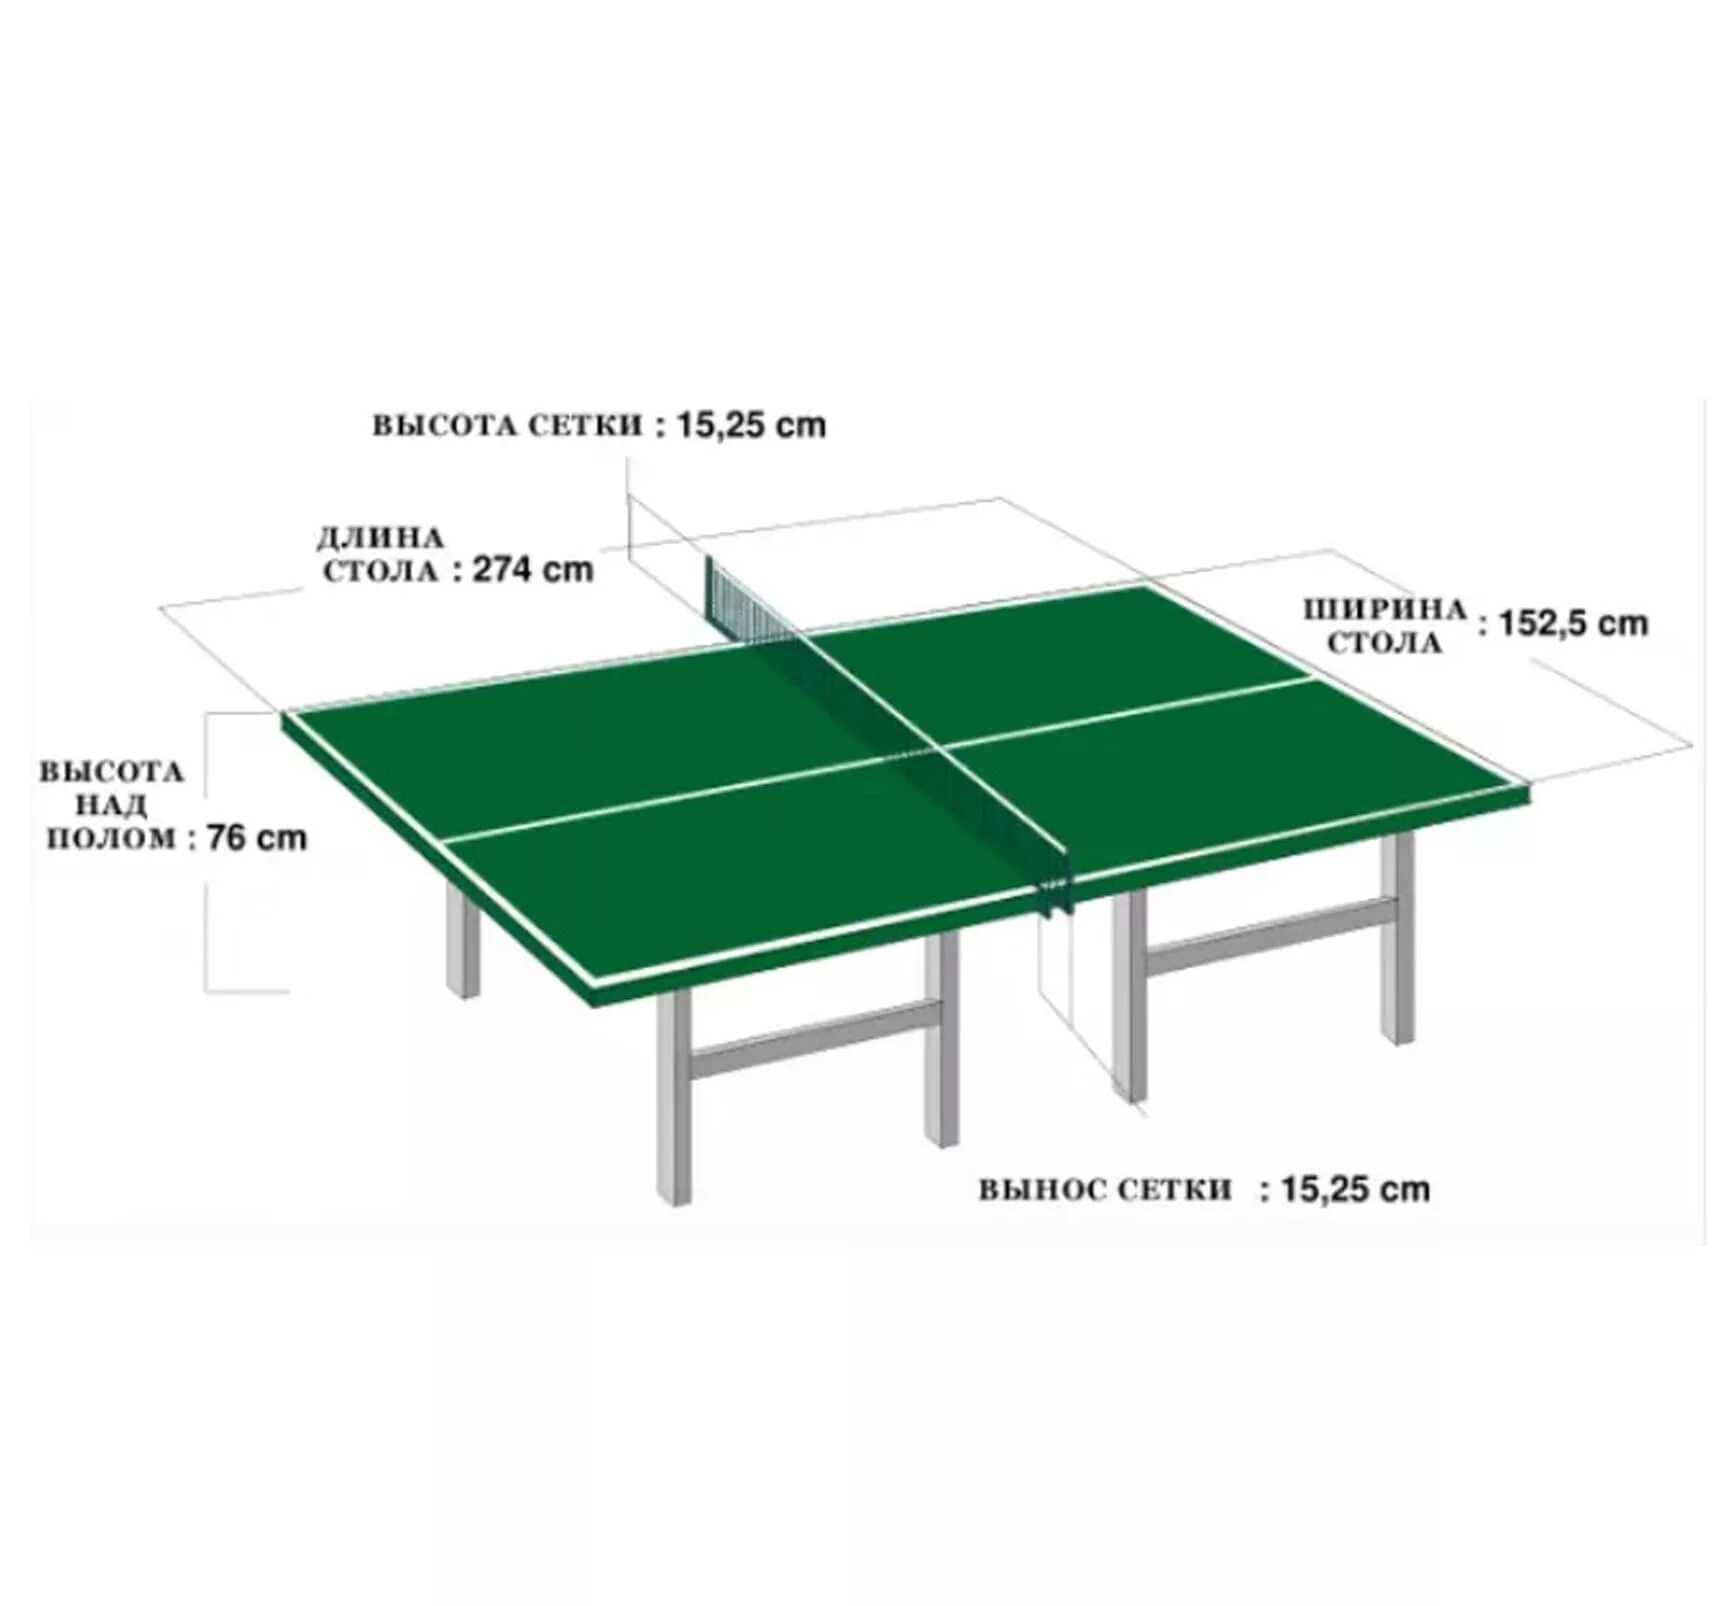 Высота сетки в настольном теннисе. Размеры стола для настольного тенниса. Высота теннисного стола для настольного тенниса. Разметка теннисного стола толщина линий. Размеры стола для настольного тенниса длина ширина высота.